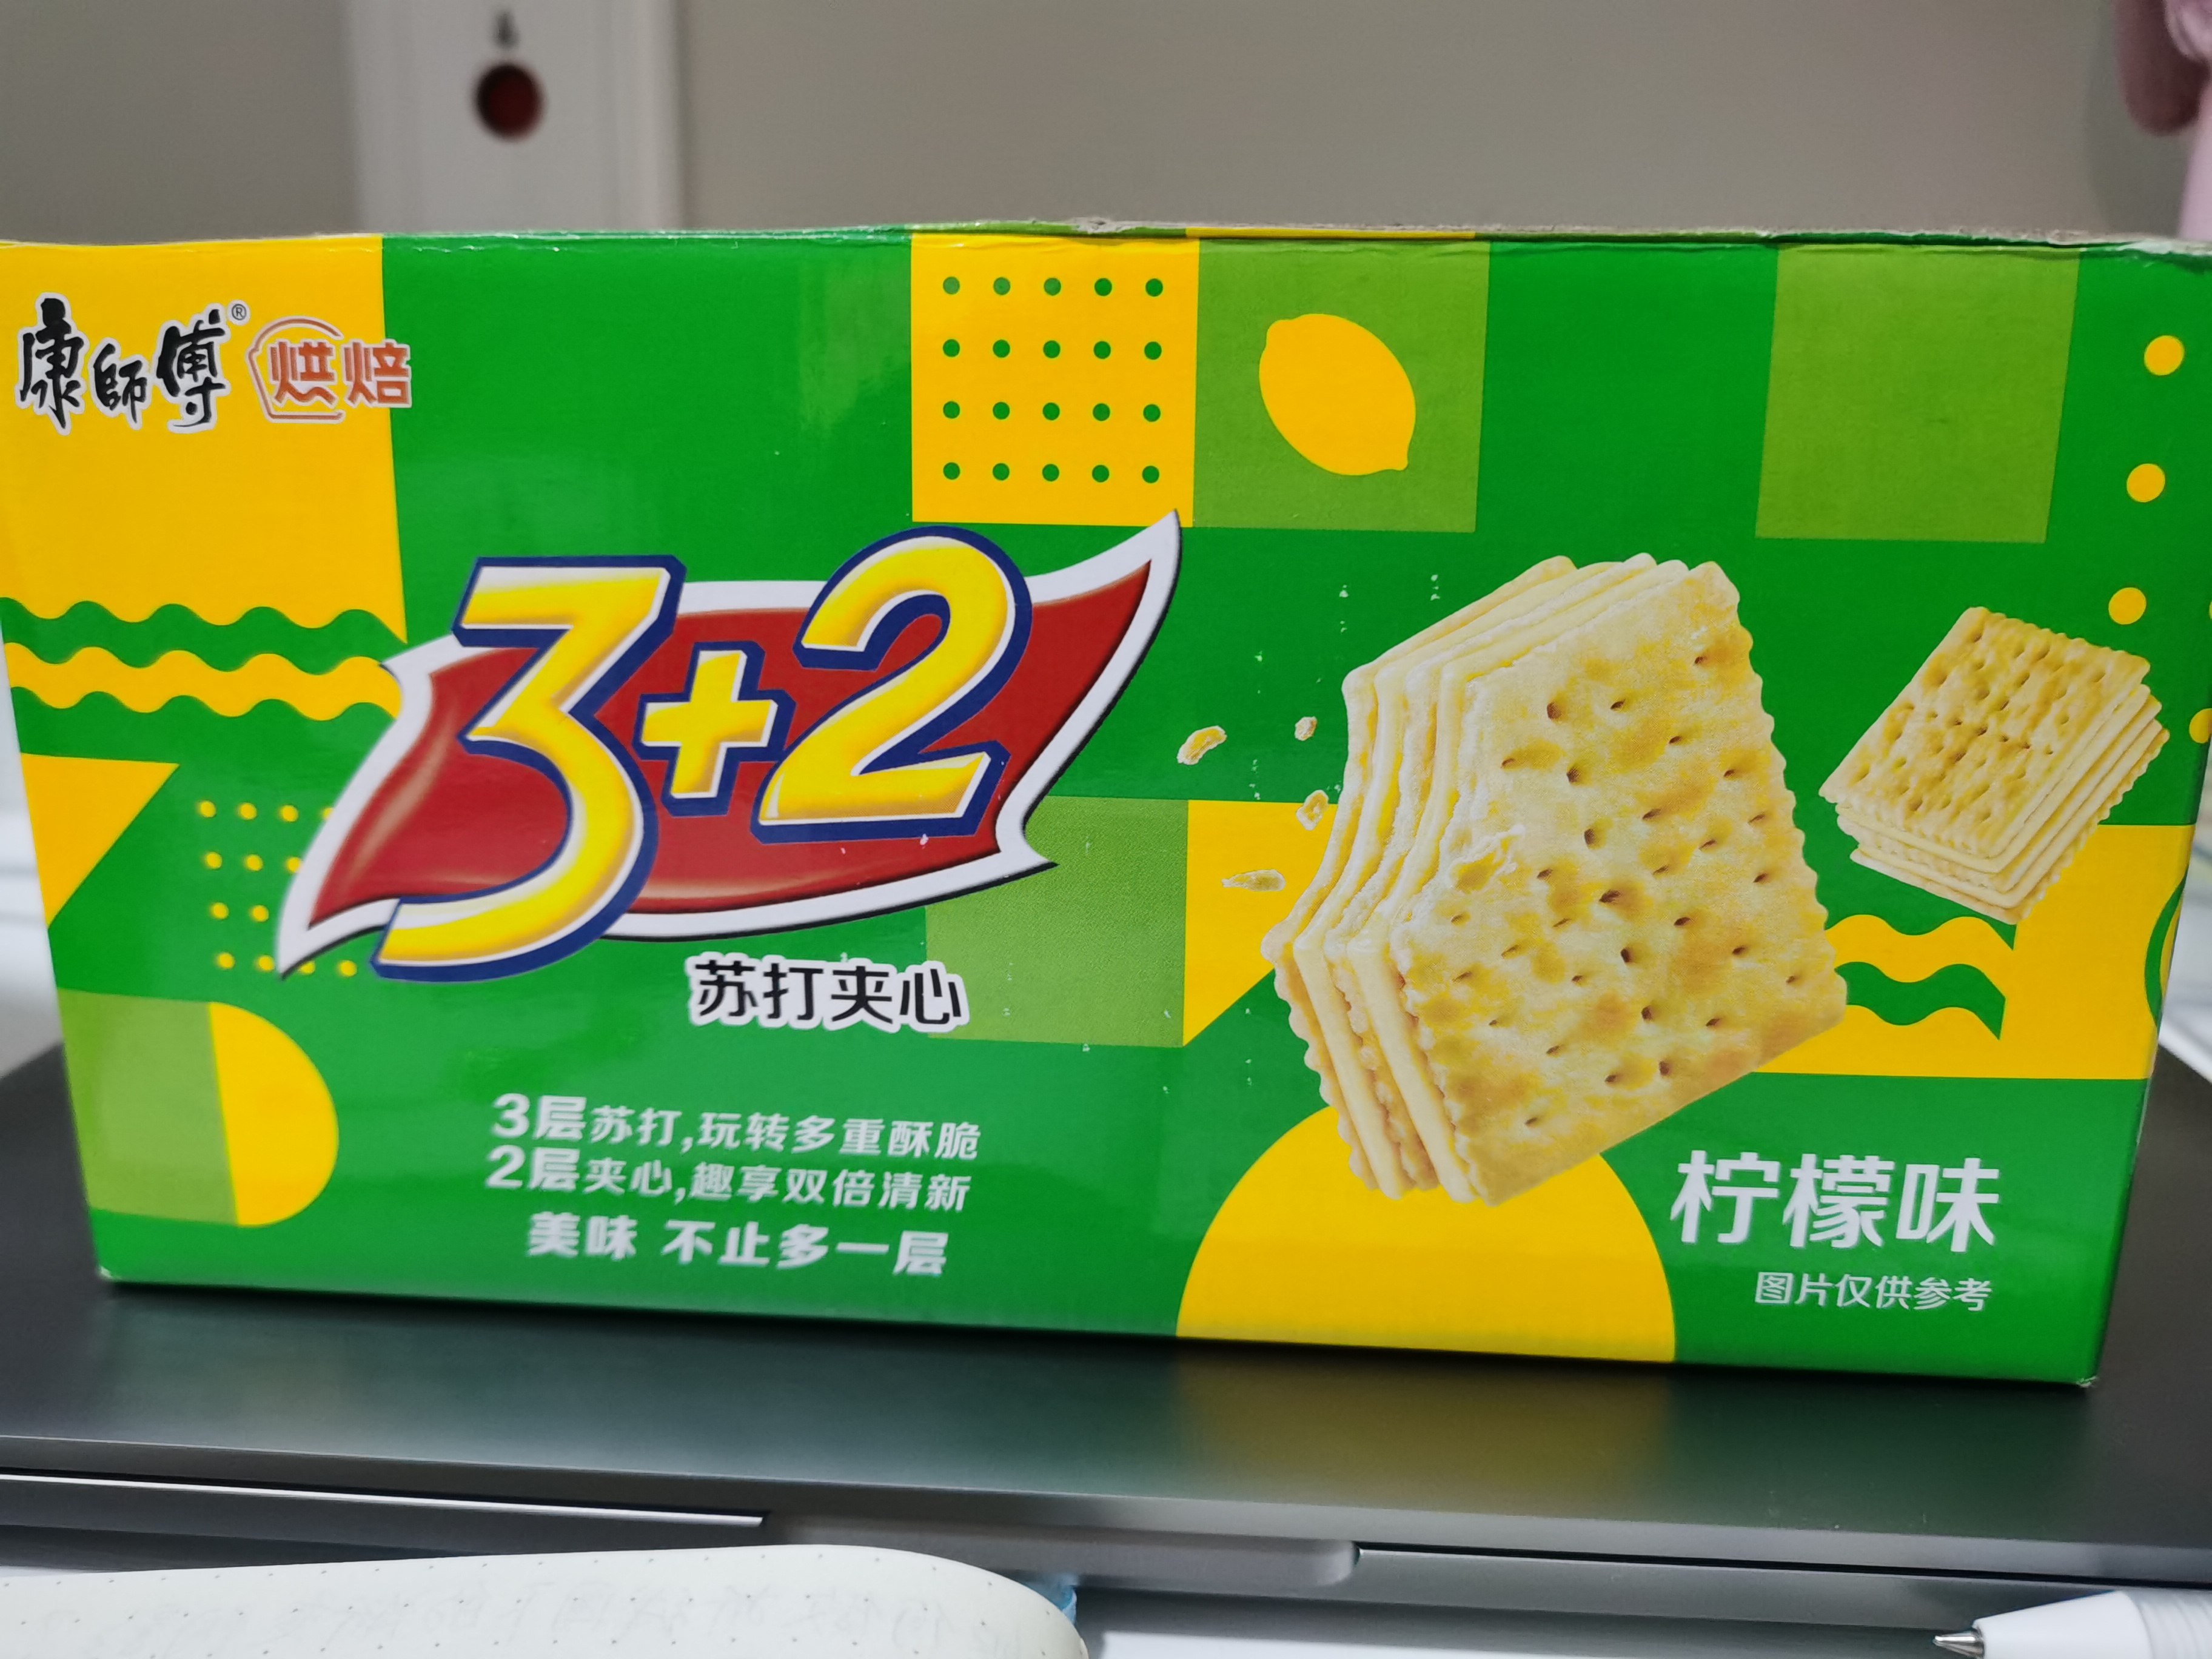 康师傅 3+2苏打夹心饼干(清新柠檬味) 500g(125g*4袋)